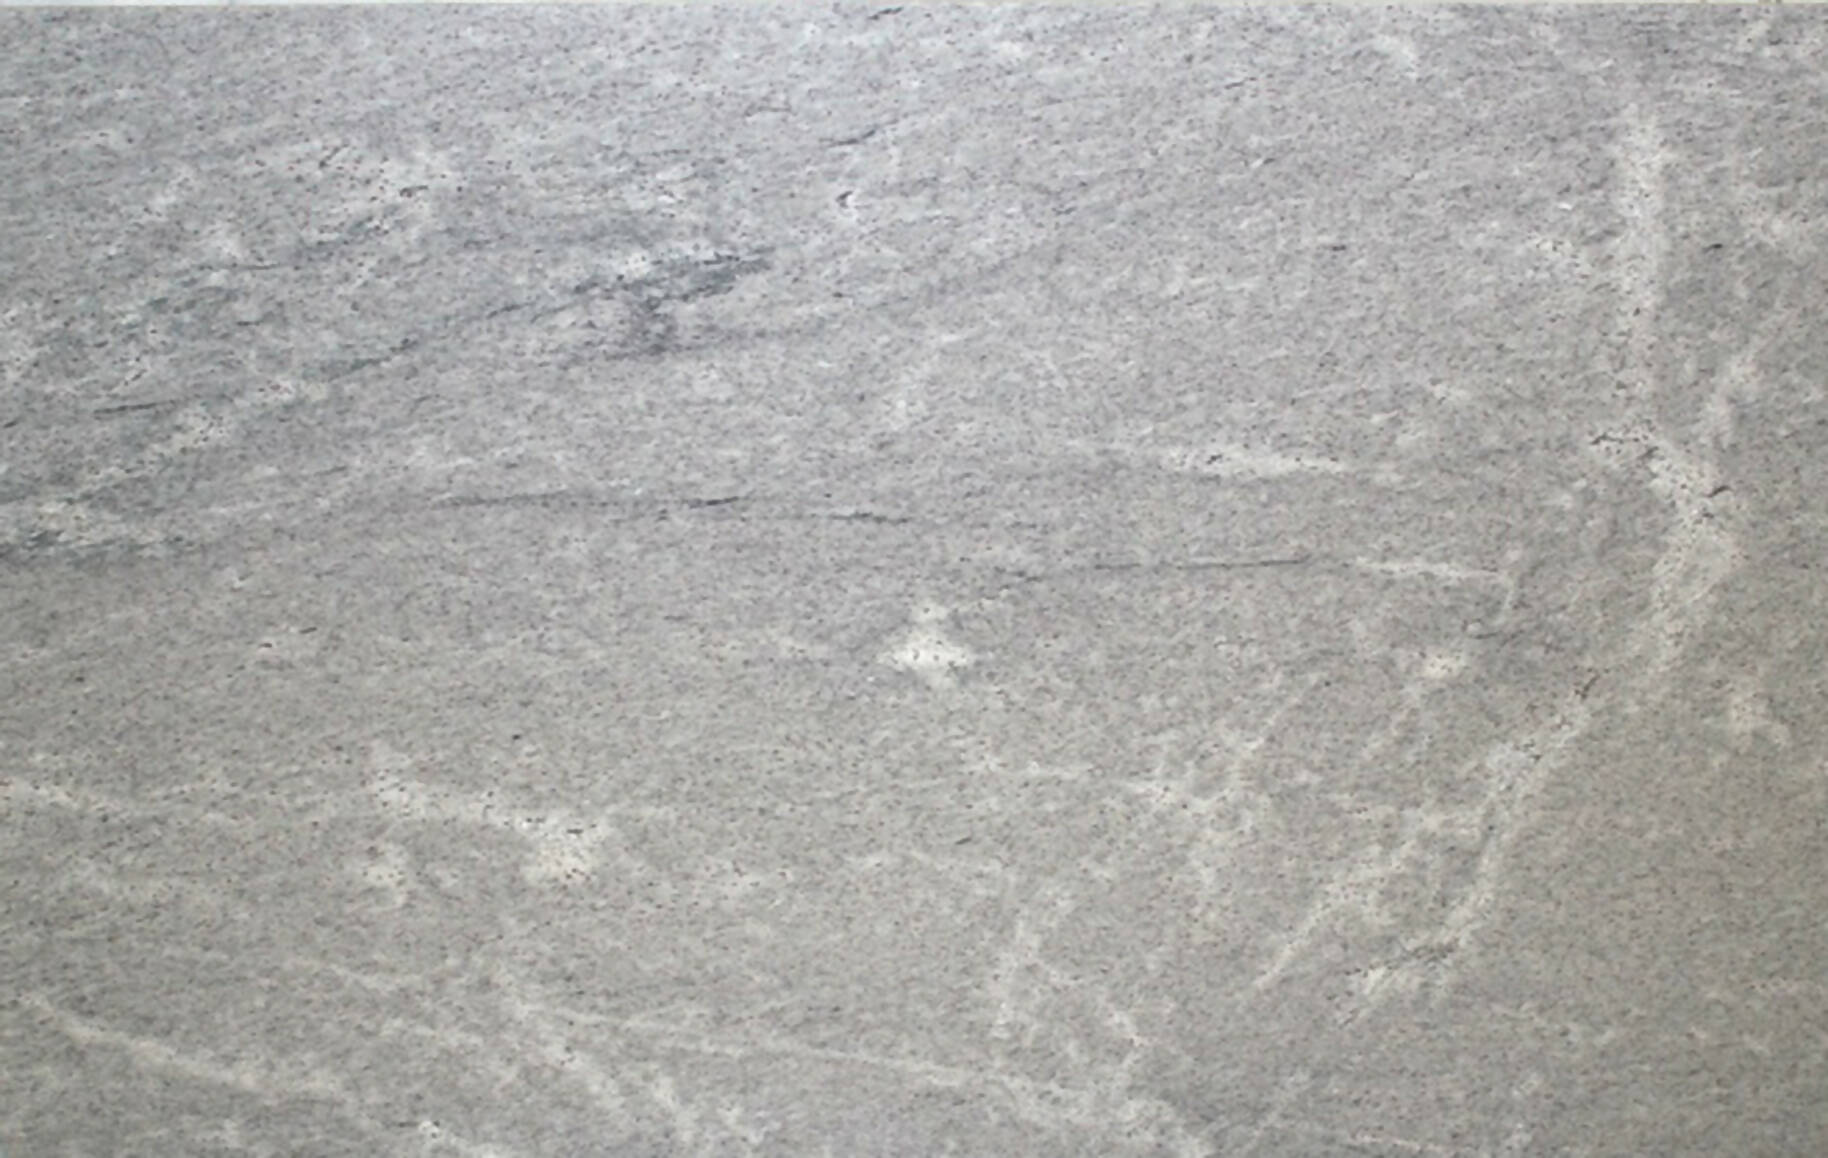 MIRACLE WHITE GRANITE,Granite,KSG UK LTD,www.work-tops.com